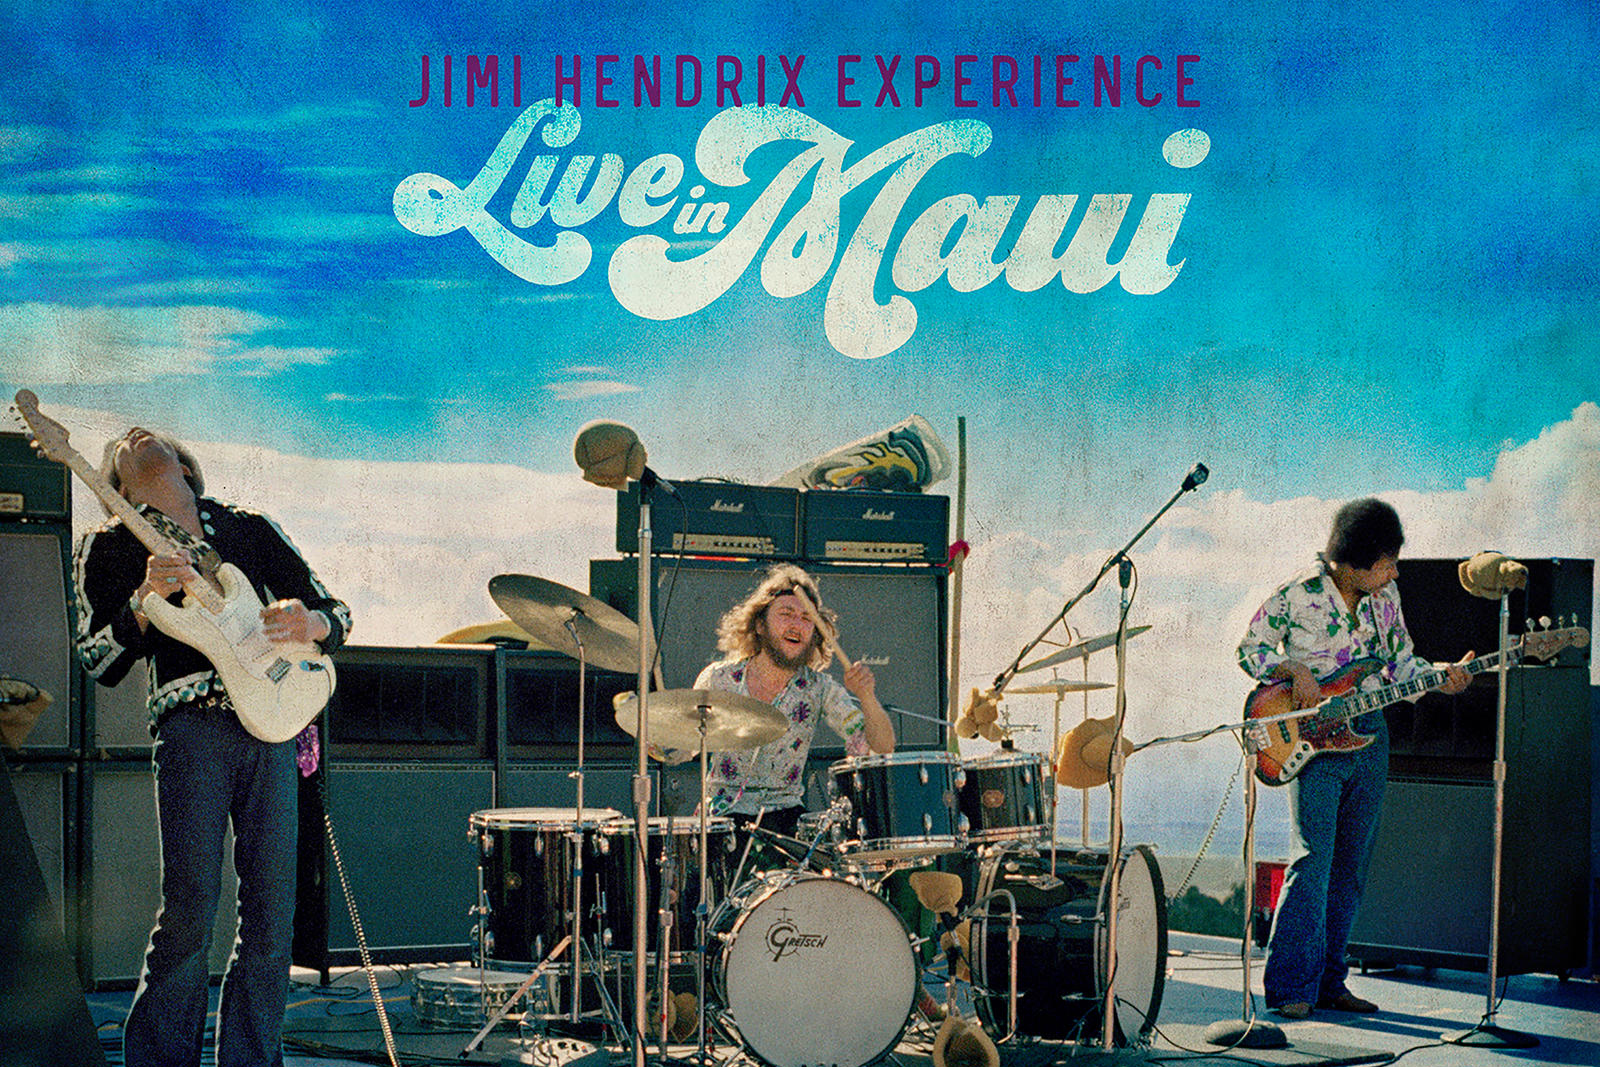 Kubernik: Jimi Hendrix, Live in Maui Album On the Way with New